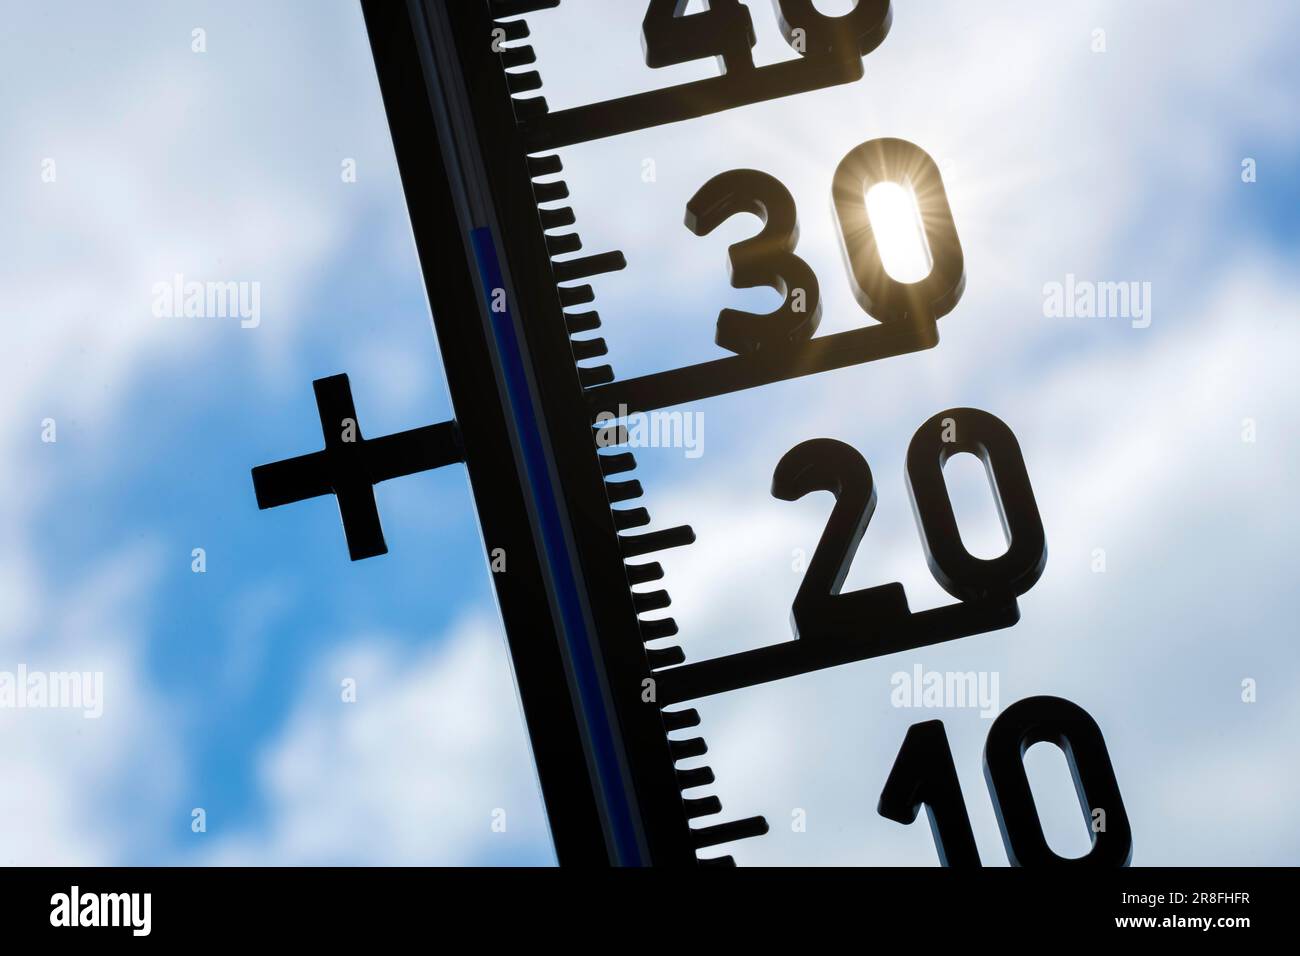 Image symbolique, réchauffement climatique, thermomètre, soleil, vague de chaleur, 37 degrés Celsius, Bade-Wurtemberg, Allemagne Banque D'Images